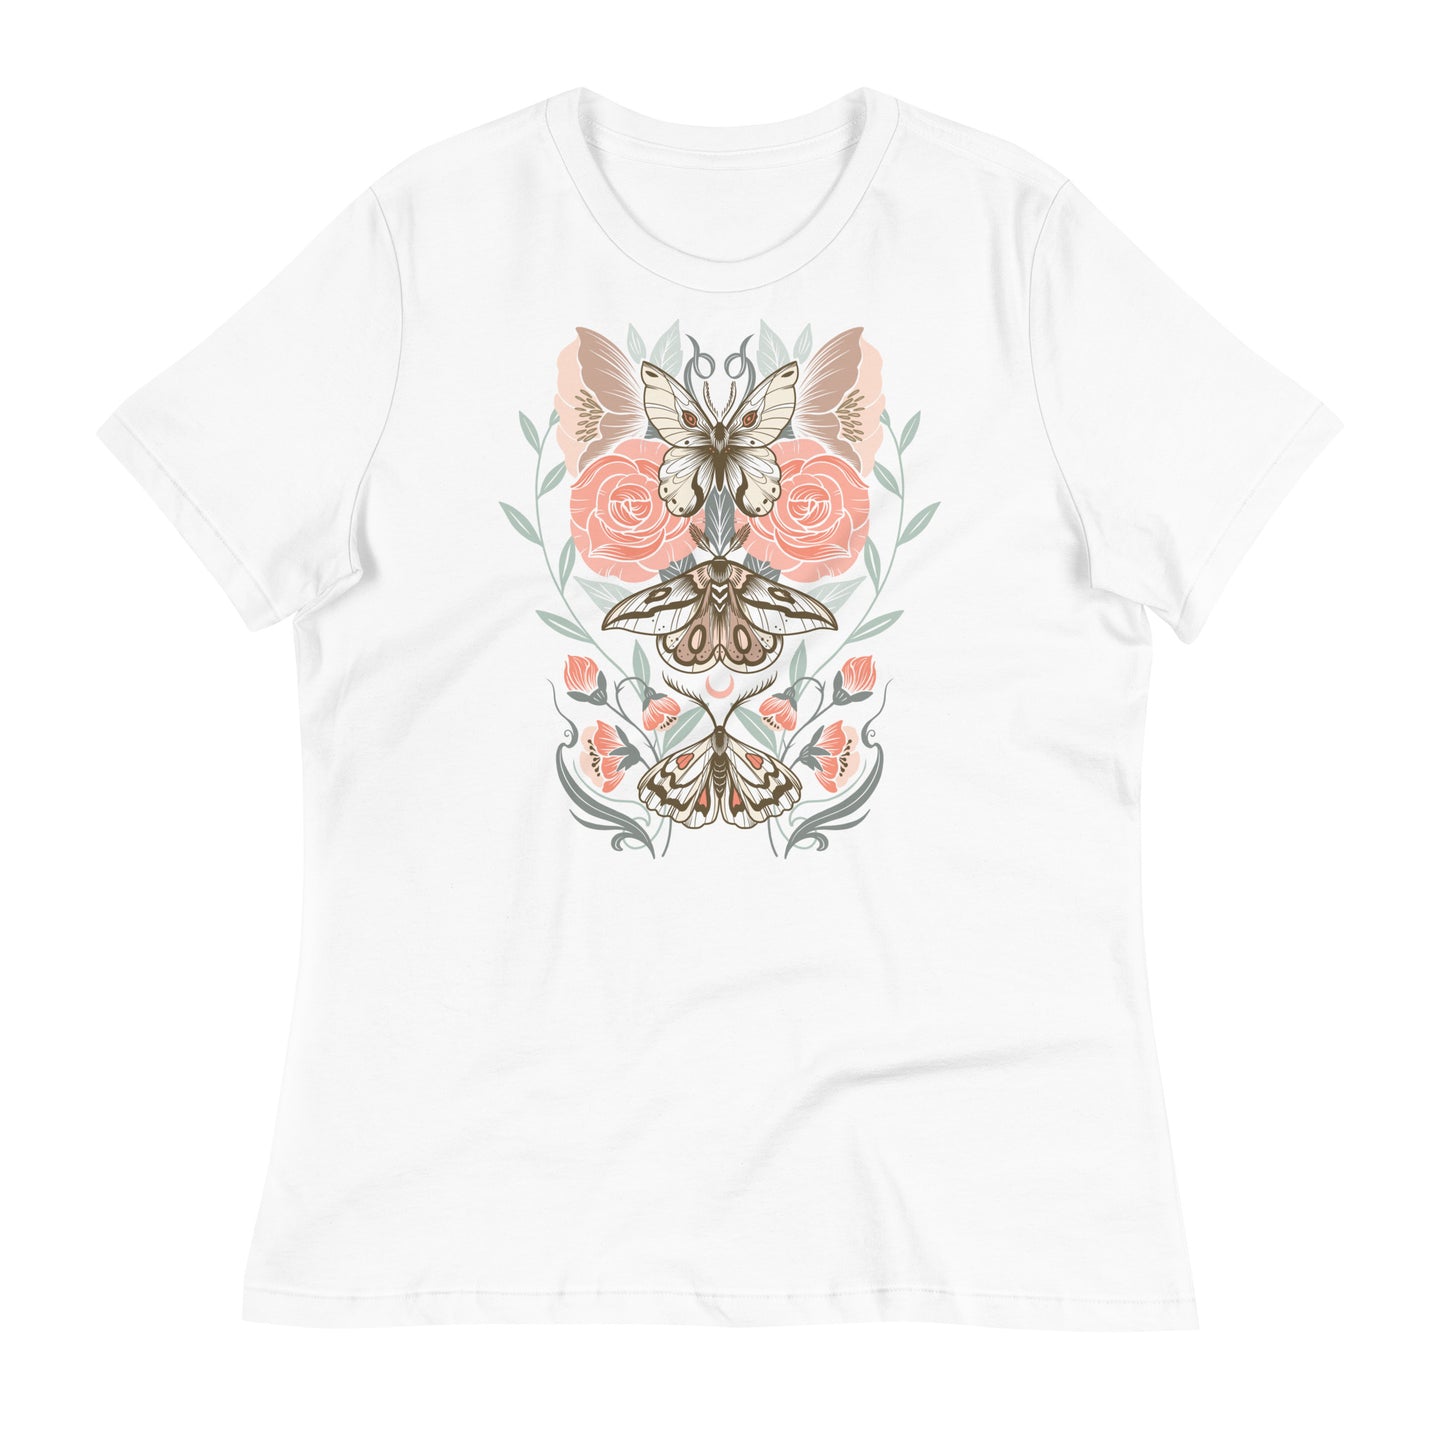 Moths and Florals Women's T-Shirt